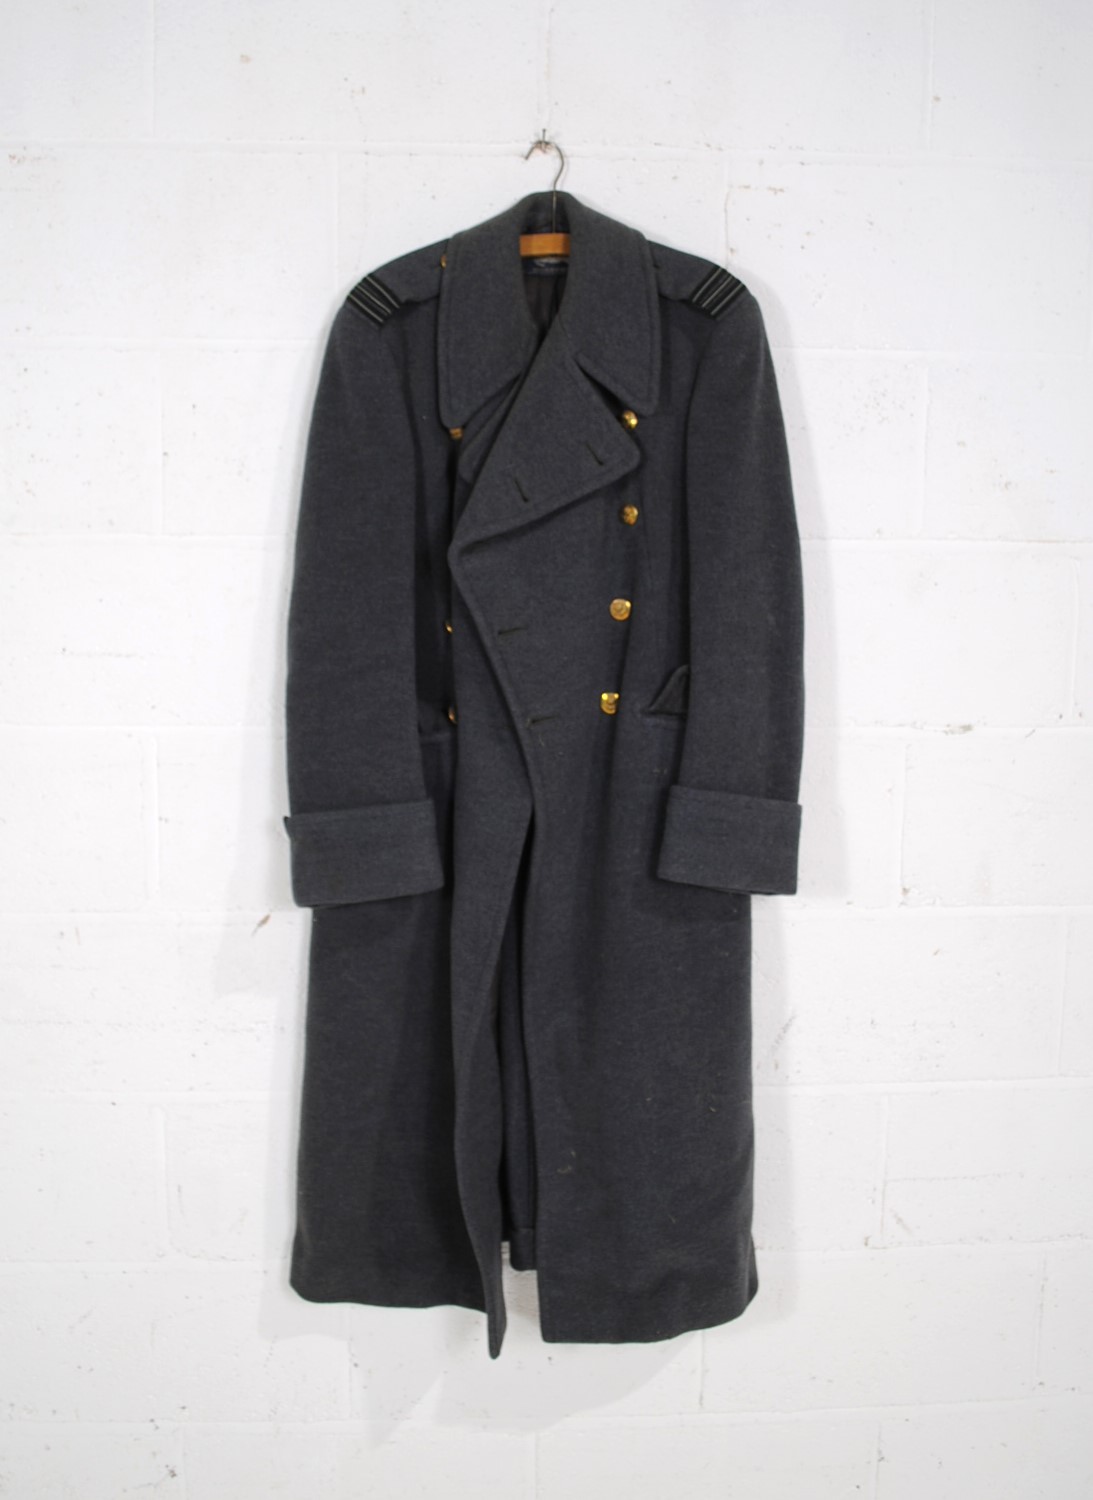 A 'Burberrys' RAF great coat